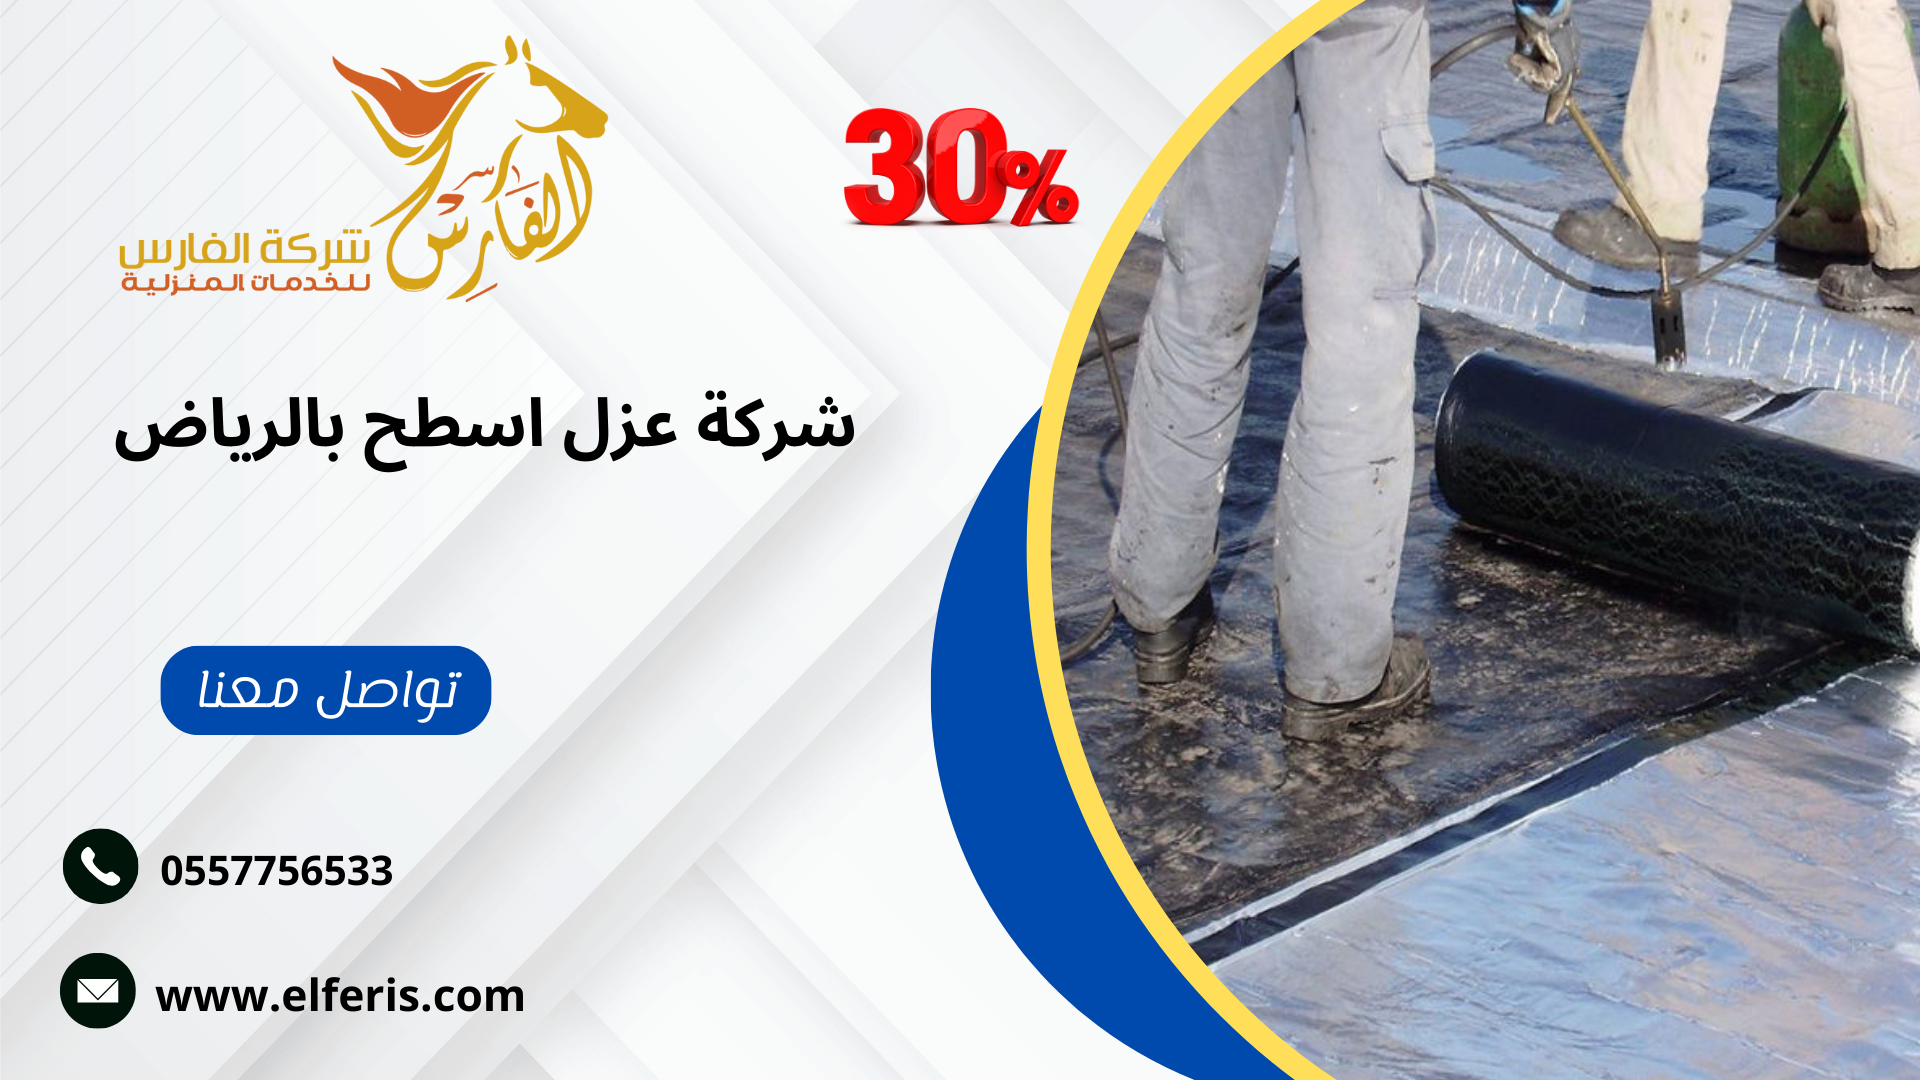 شركة عزل اسطح فوم بحي الملقا منطقة الرياض: شركة الفارس للخدمات المنزلية - تقديم الشركة